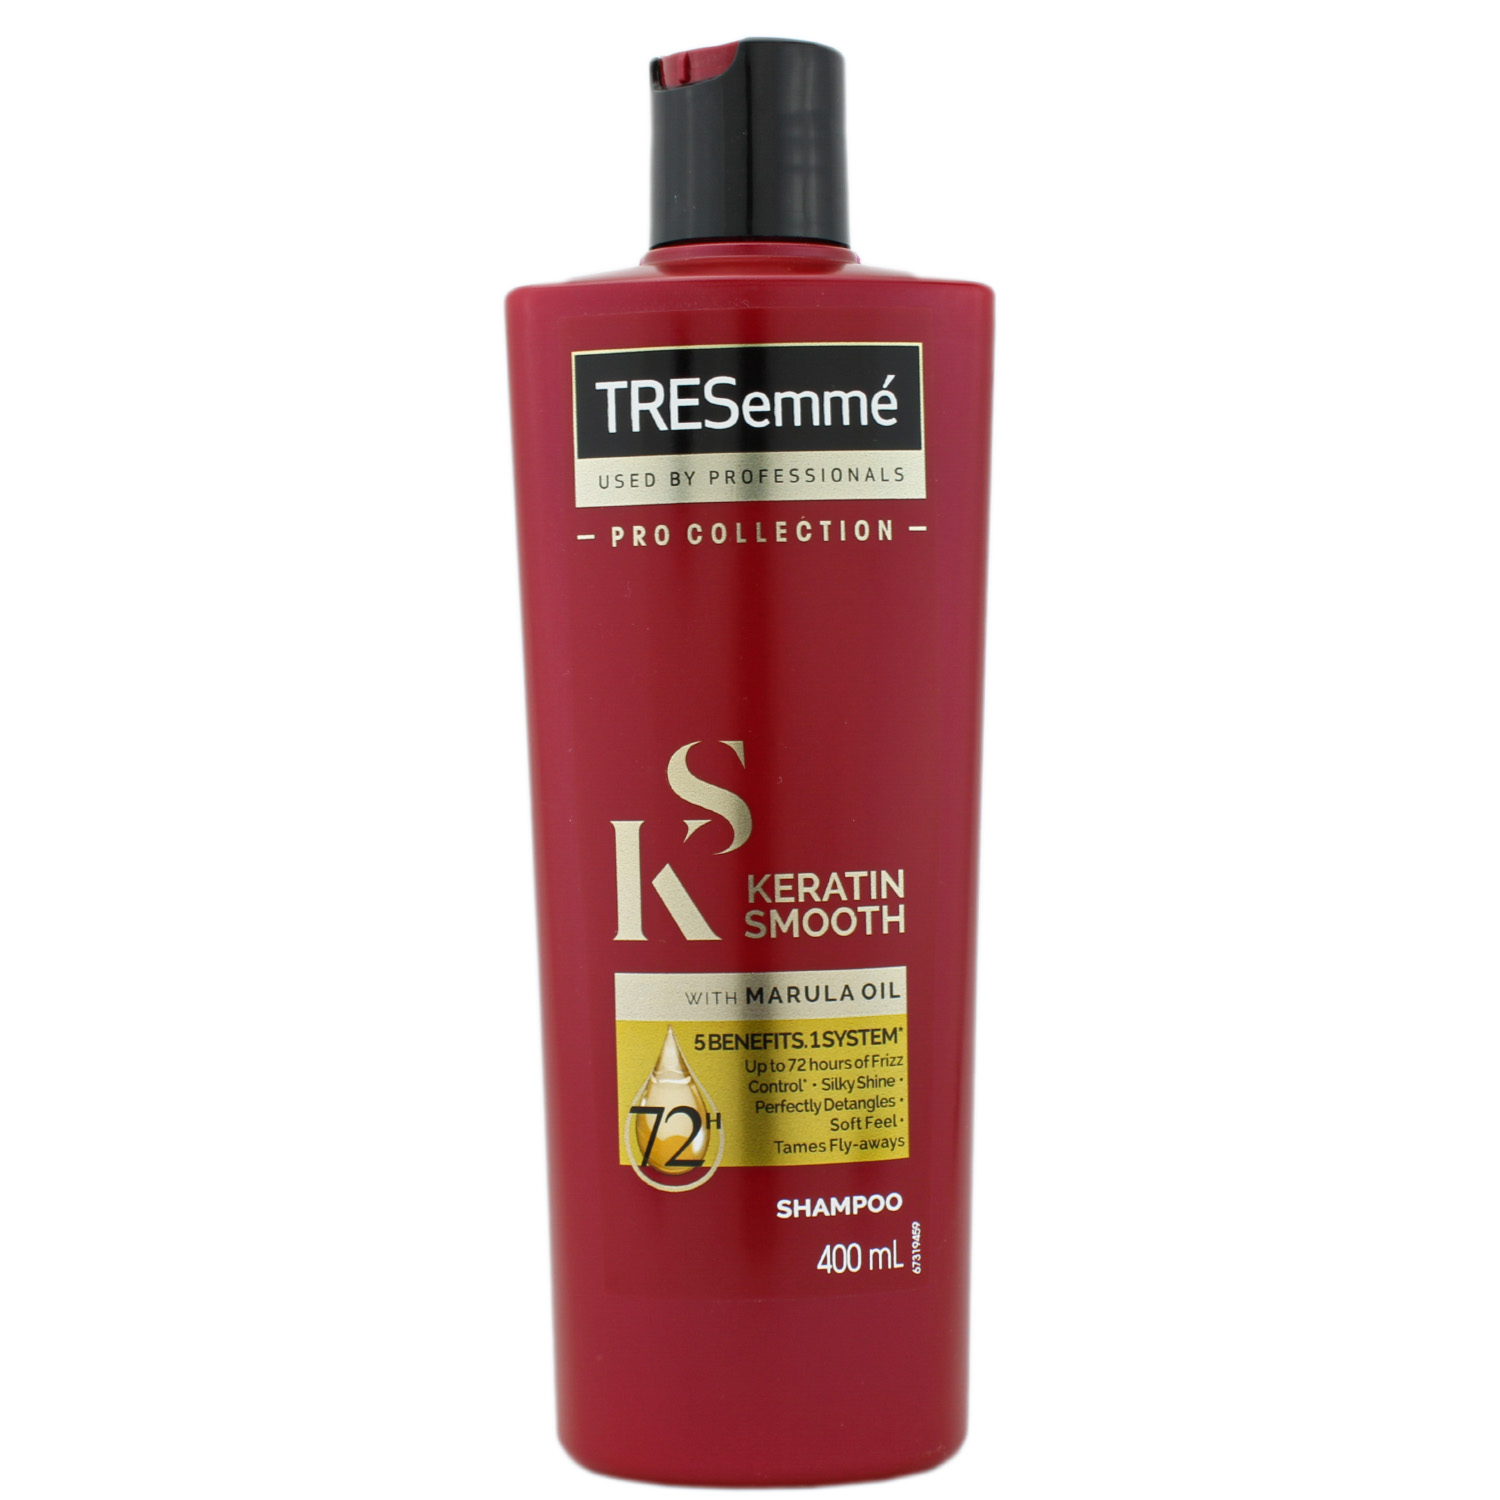 TRESemmé Keratin Smooth Shampoo 400ml